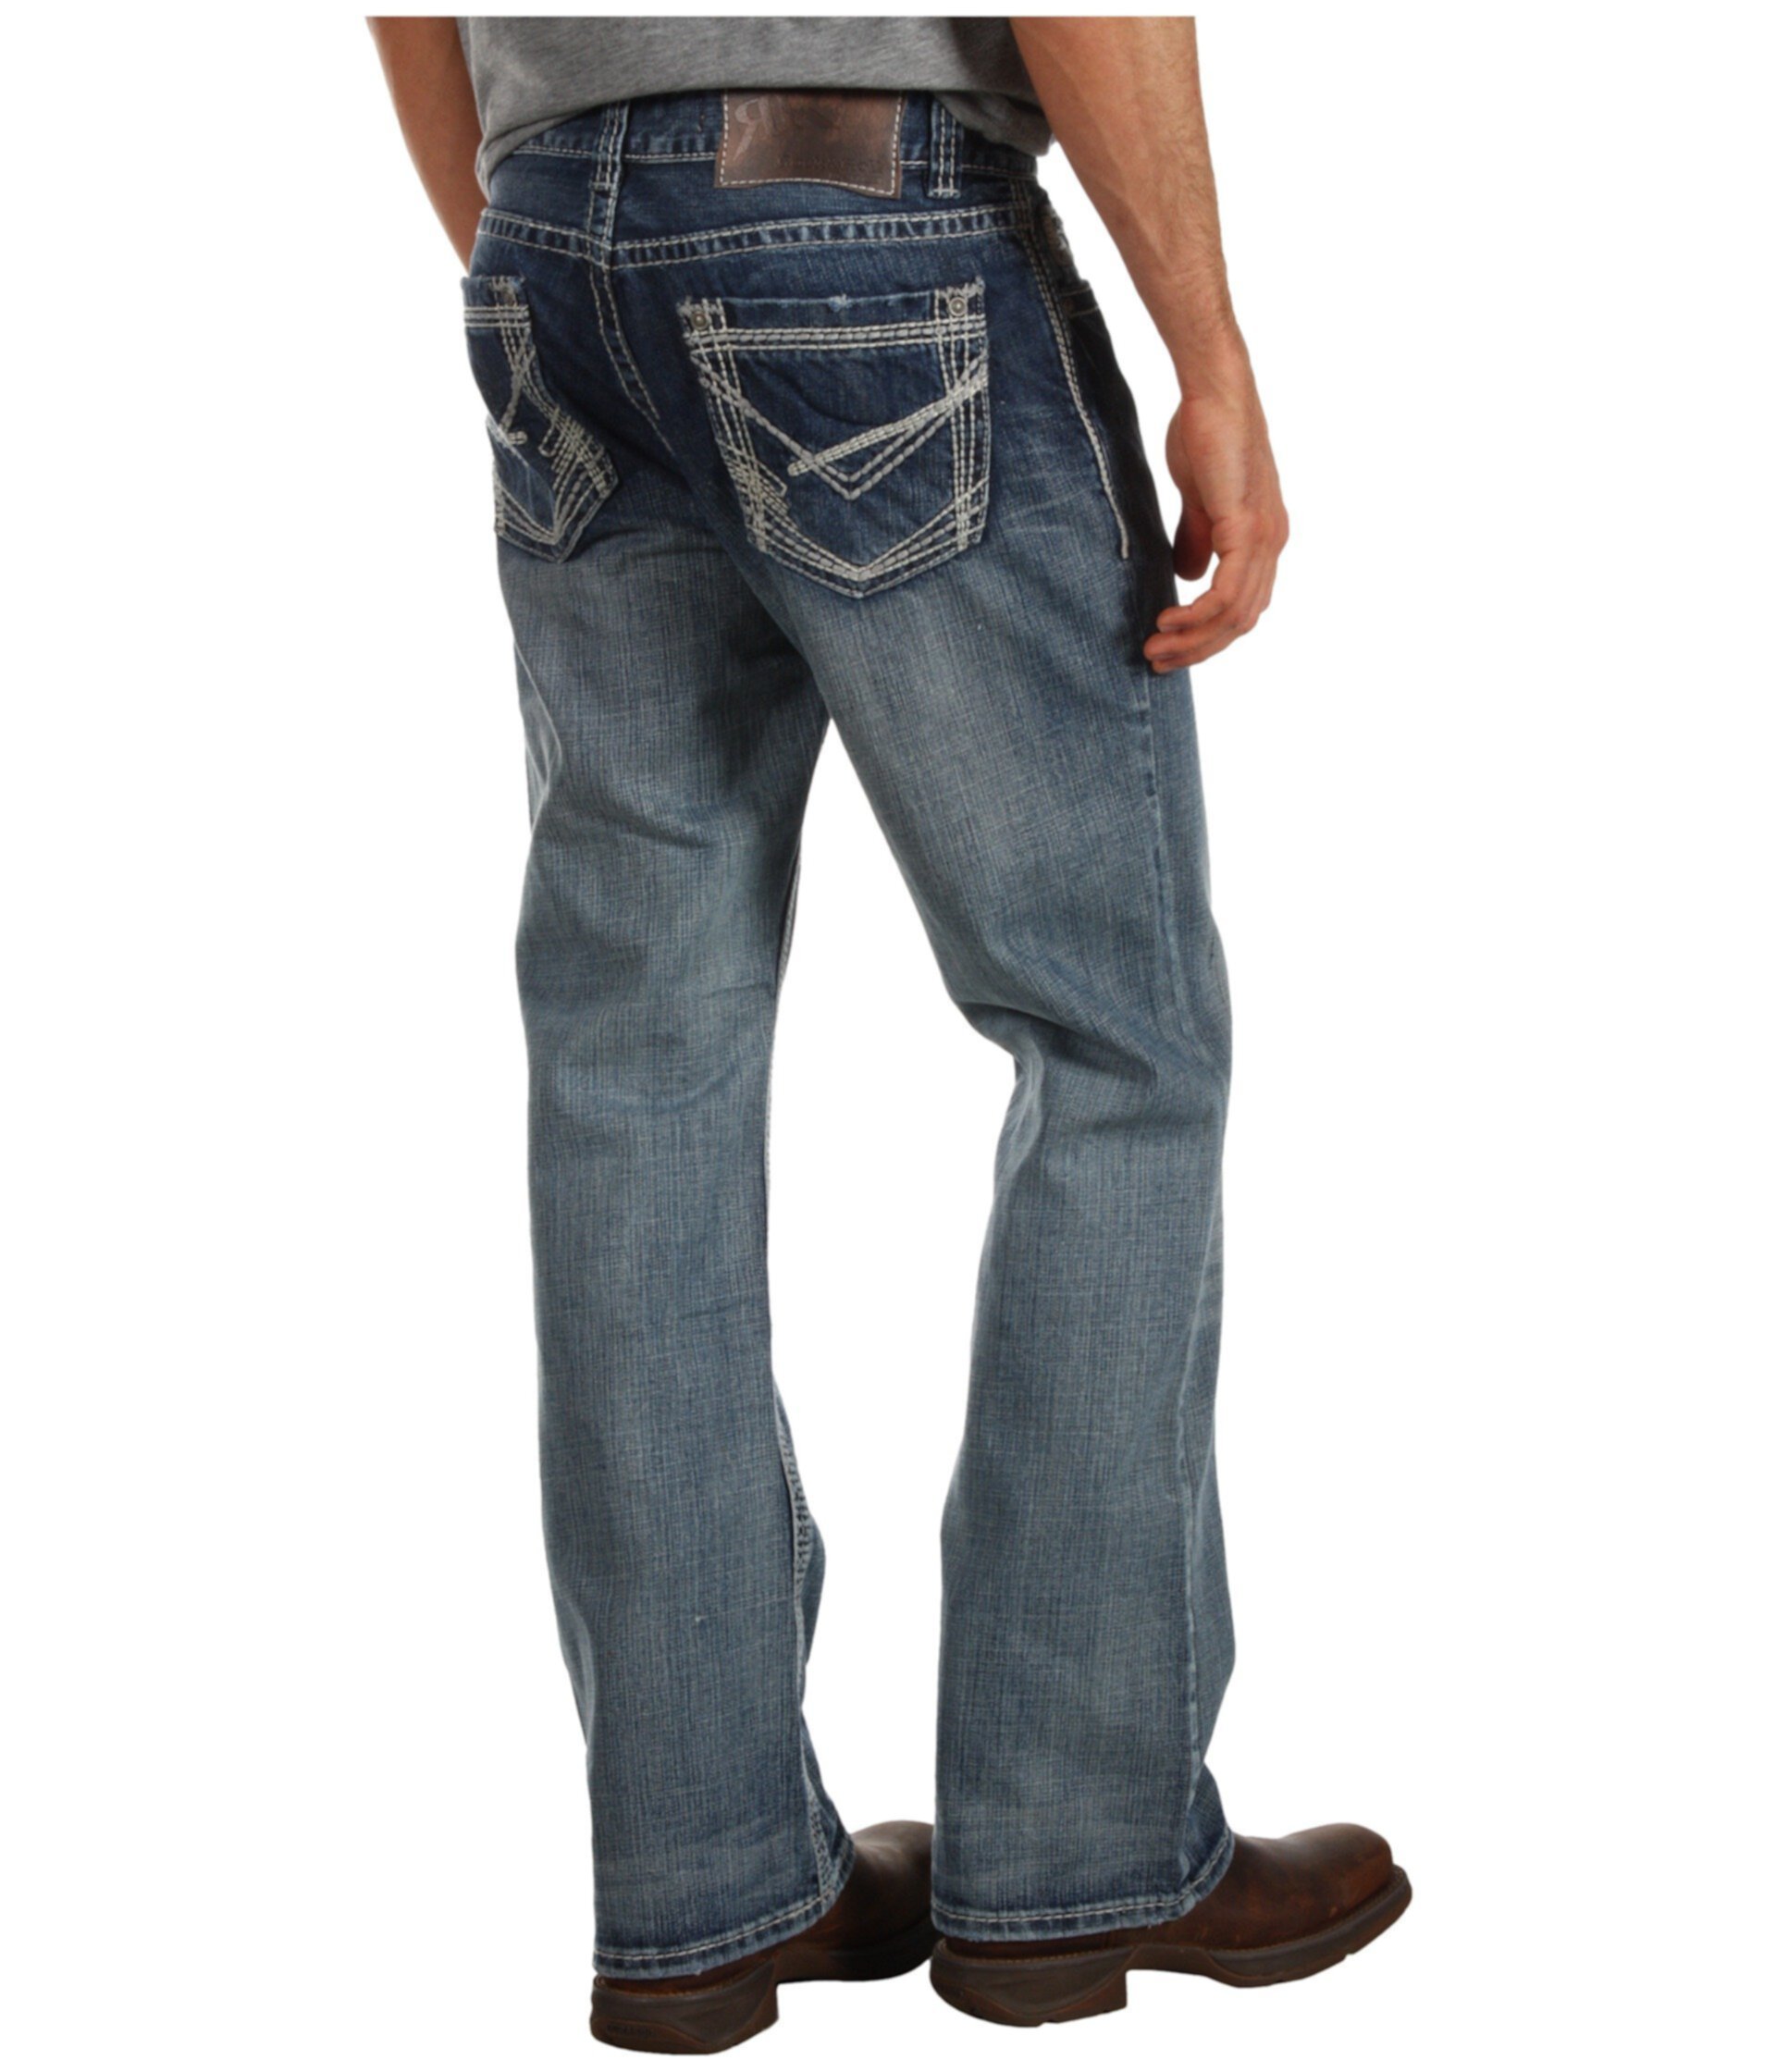 Тонкие прямые рефлекторные джинсы Revolver среднего размера M1R2396 Rock and Roll Cowboy